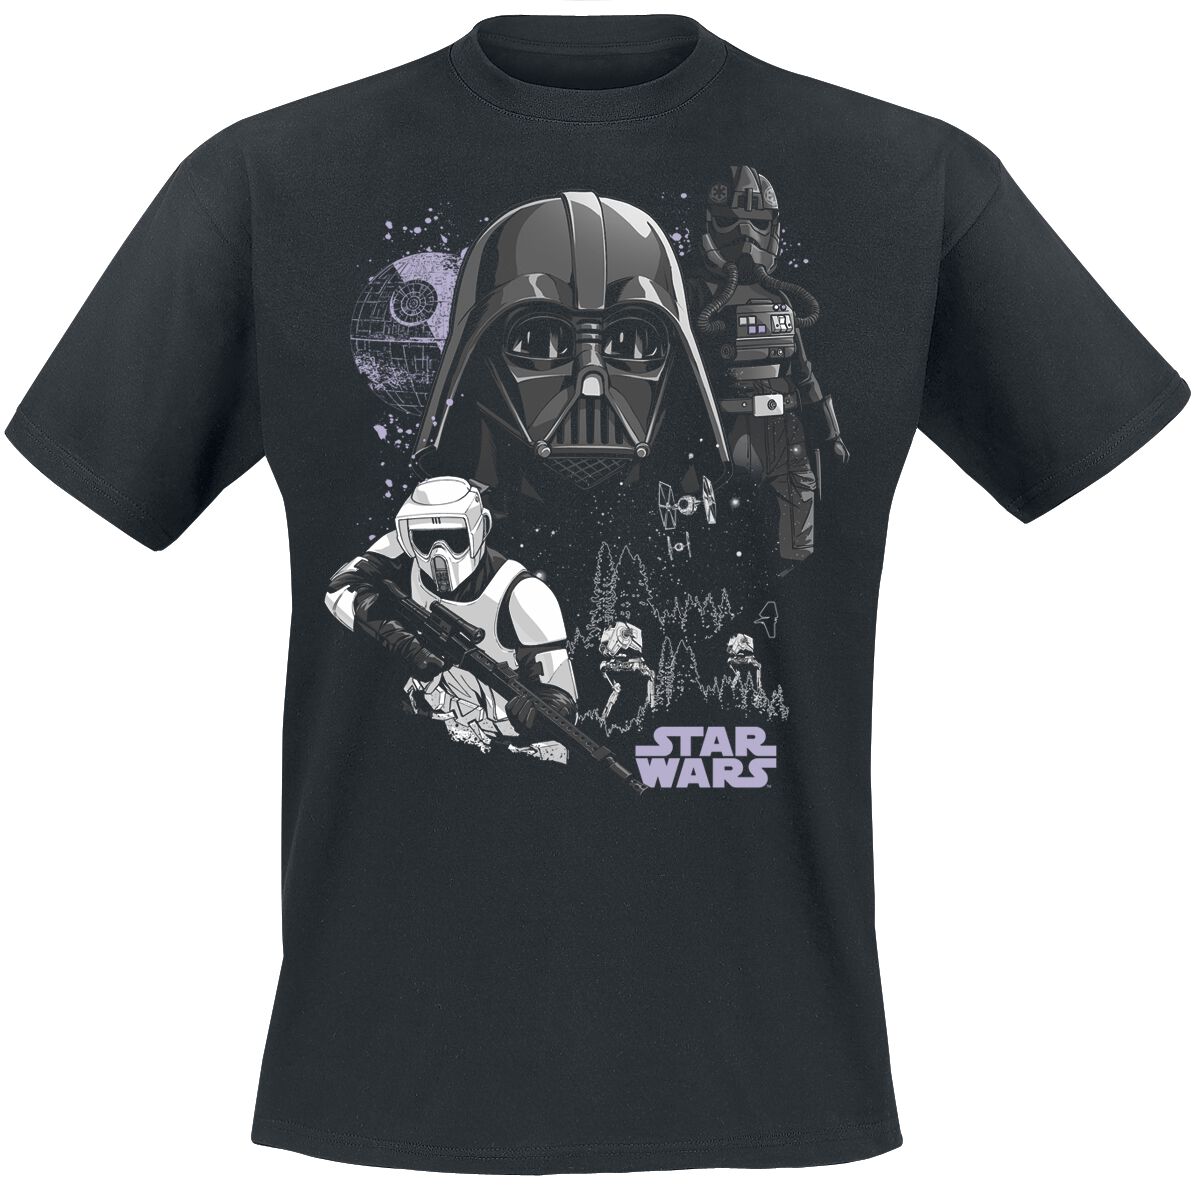 Star Wars T-Shirt - Battle Of Endor - S bis XXL - für Männer - Größe XXL - schwarz  - EMP exklusives Merchandise!